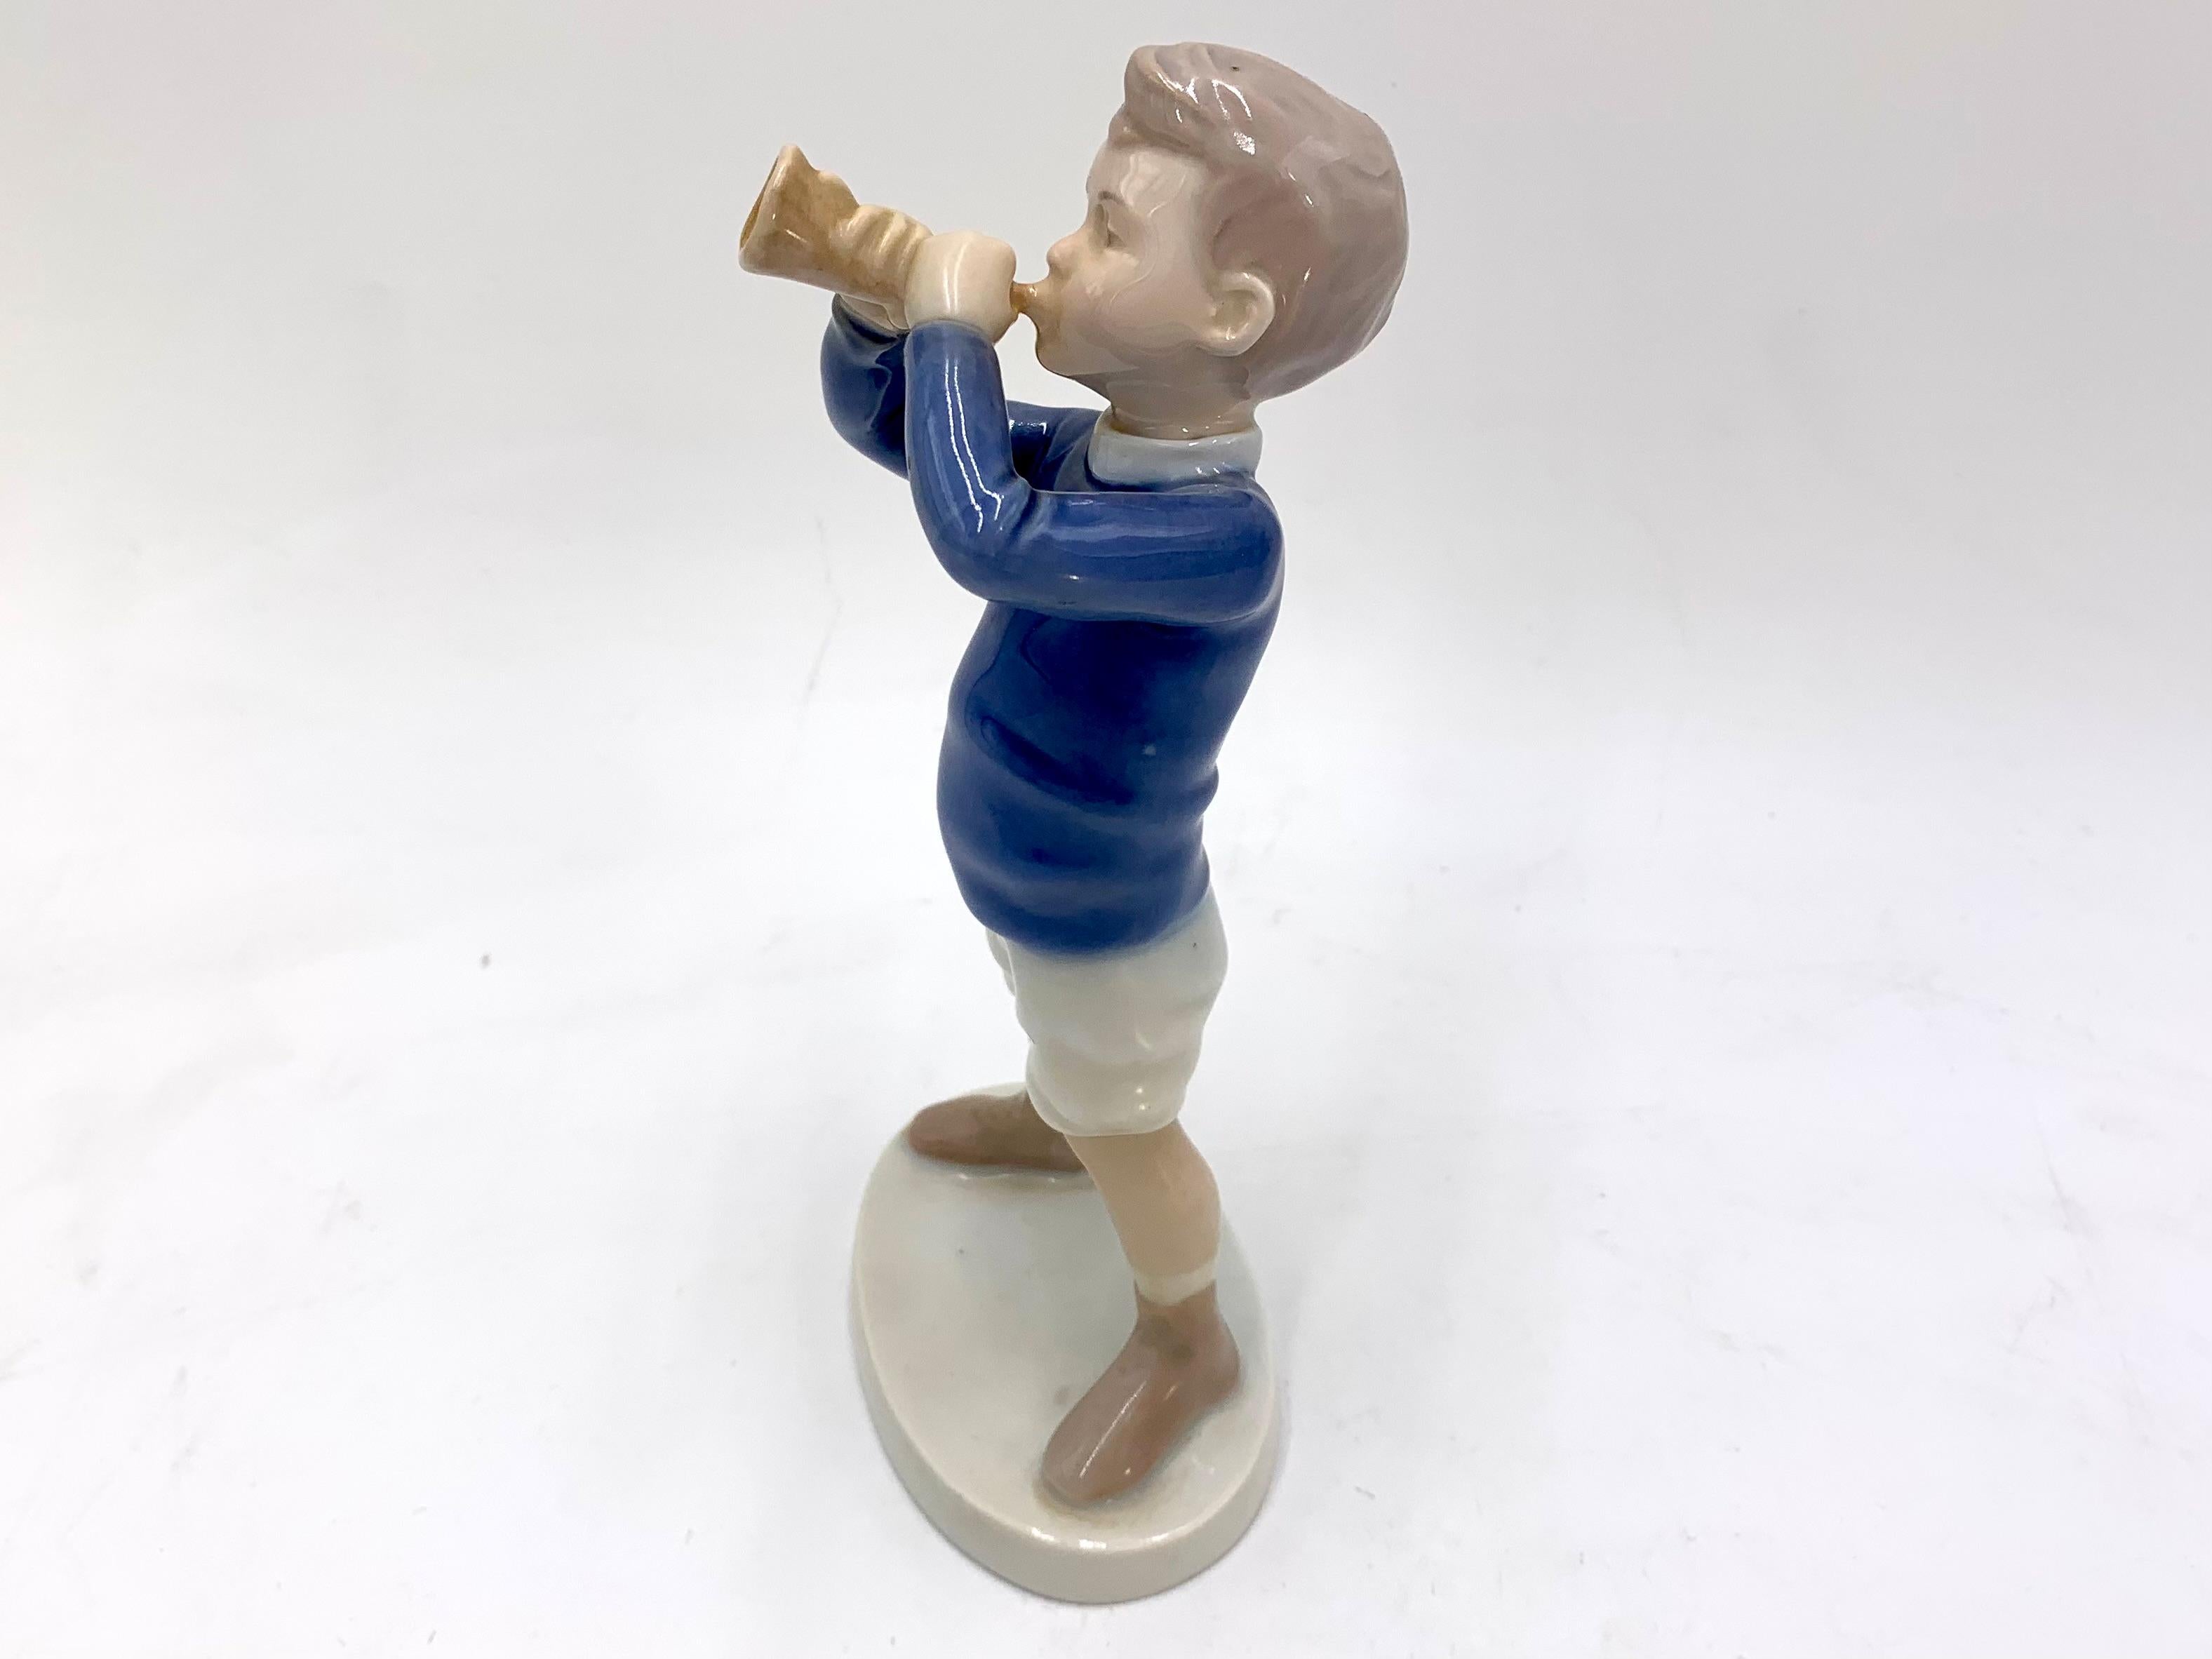 Porzellanfigur eines Jungen mit einer Trompete

Hergestellt in Dänemark von Bing & Grondahl

Produziert in den Jahren 1970-1983.

Modellnummer # 1792

Sehr guter Zustand, keine Schäden

Maße: Höhe 19cm Breite 8,5cm Tiefe 6cm.